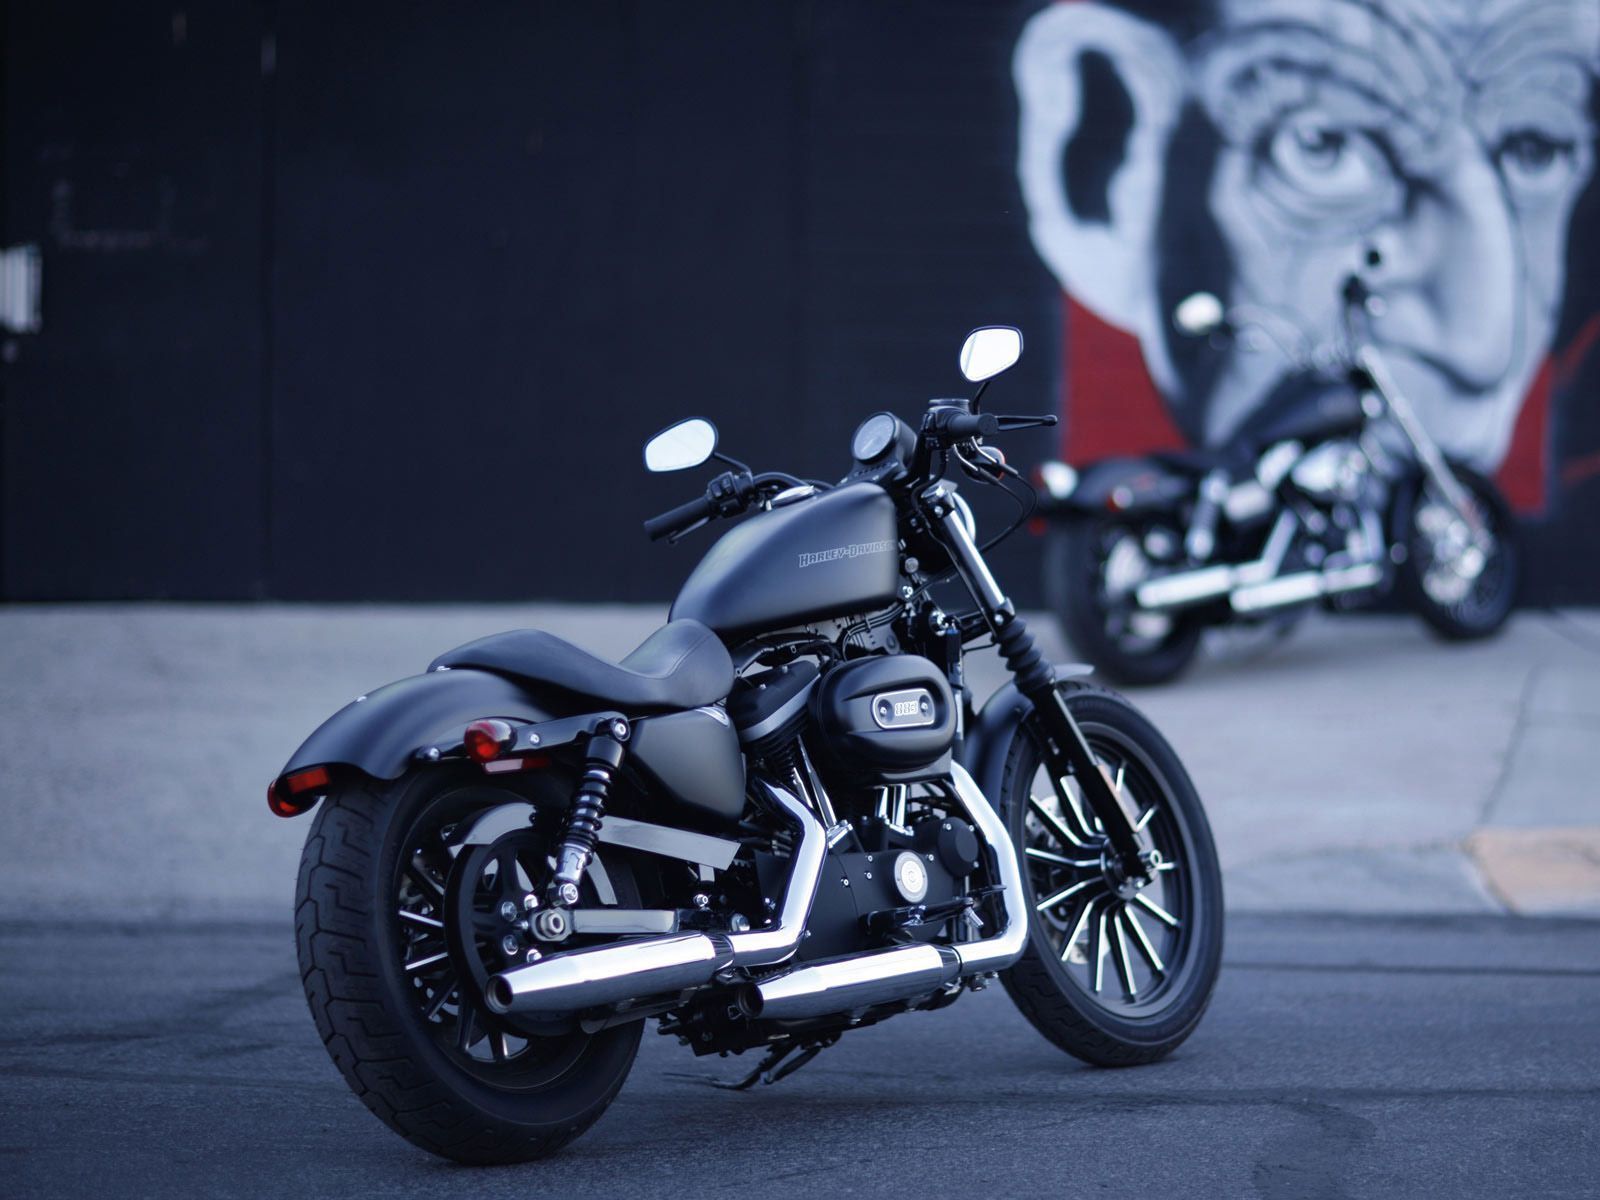 Harley motorcycle desktop wallpapers